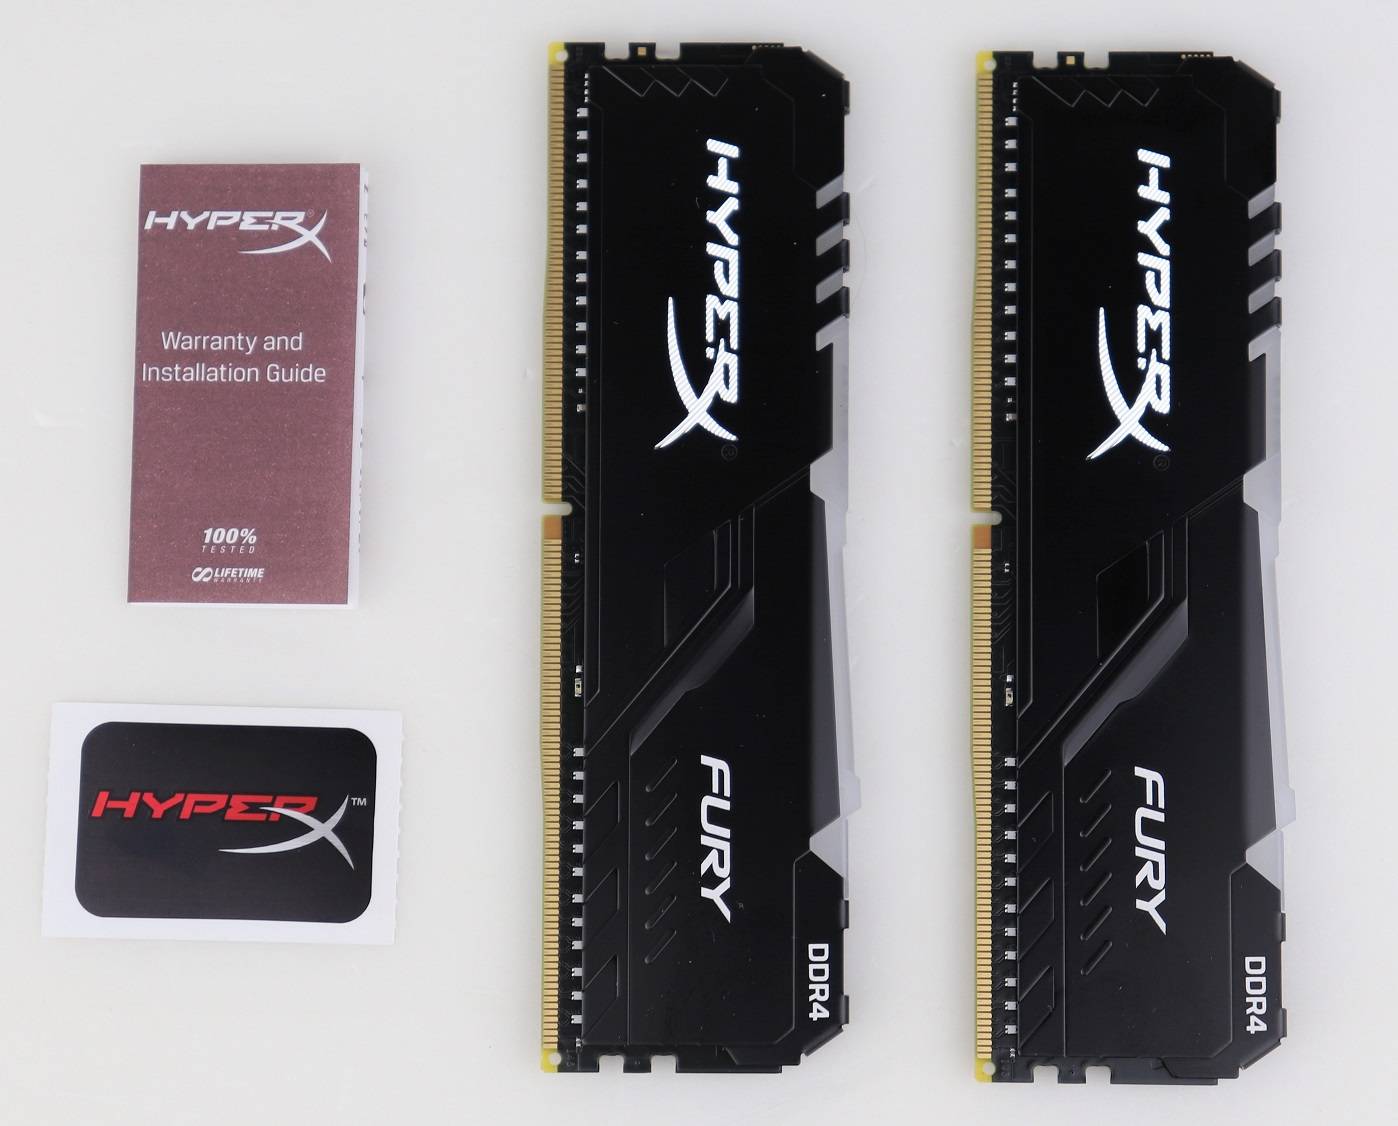 HyperX FURY RGB DDR4記憶體